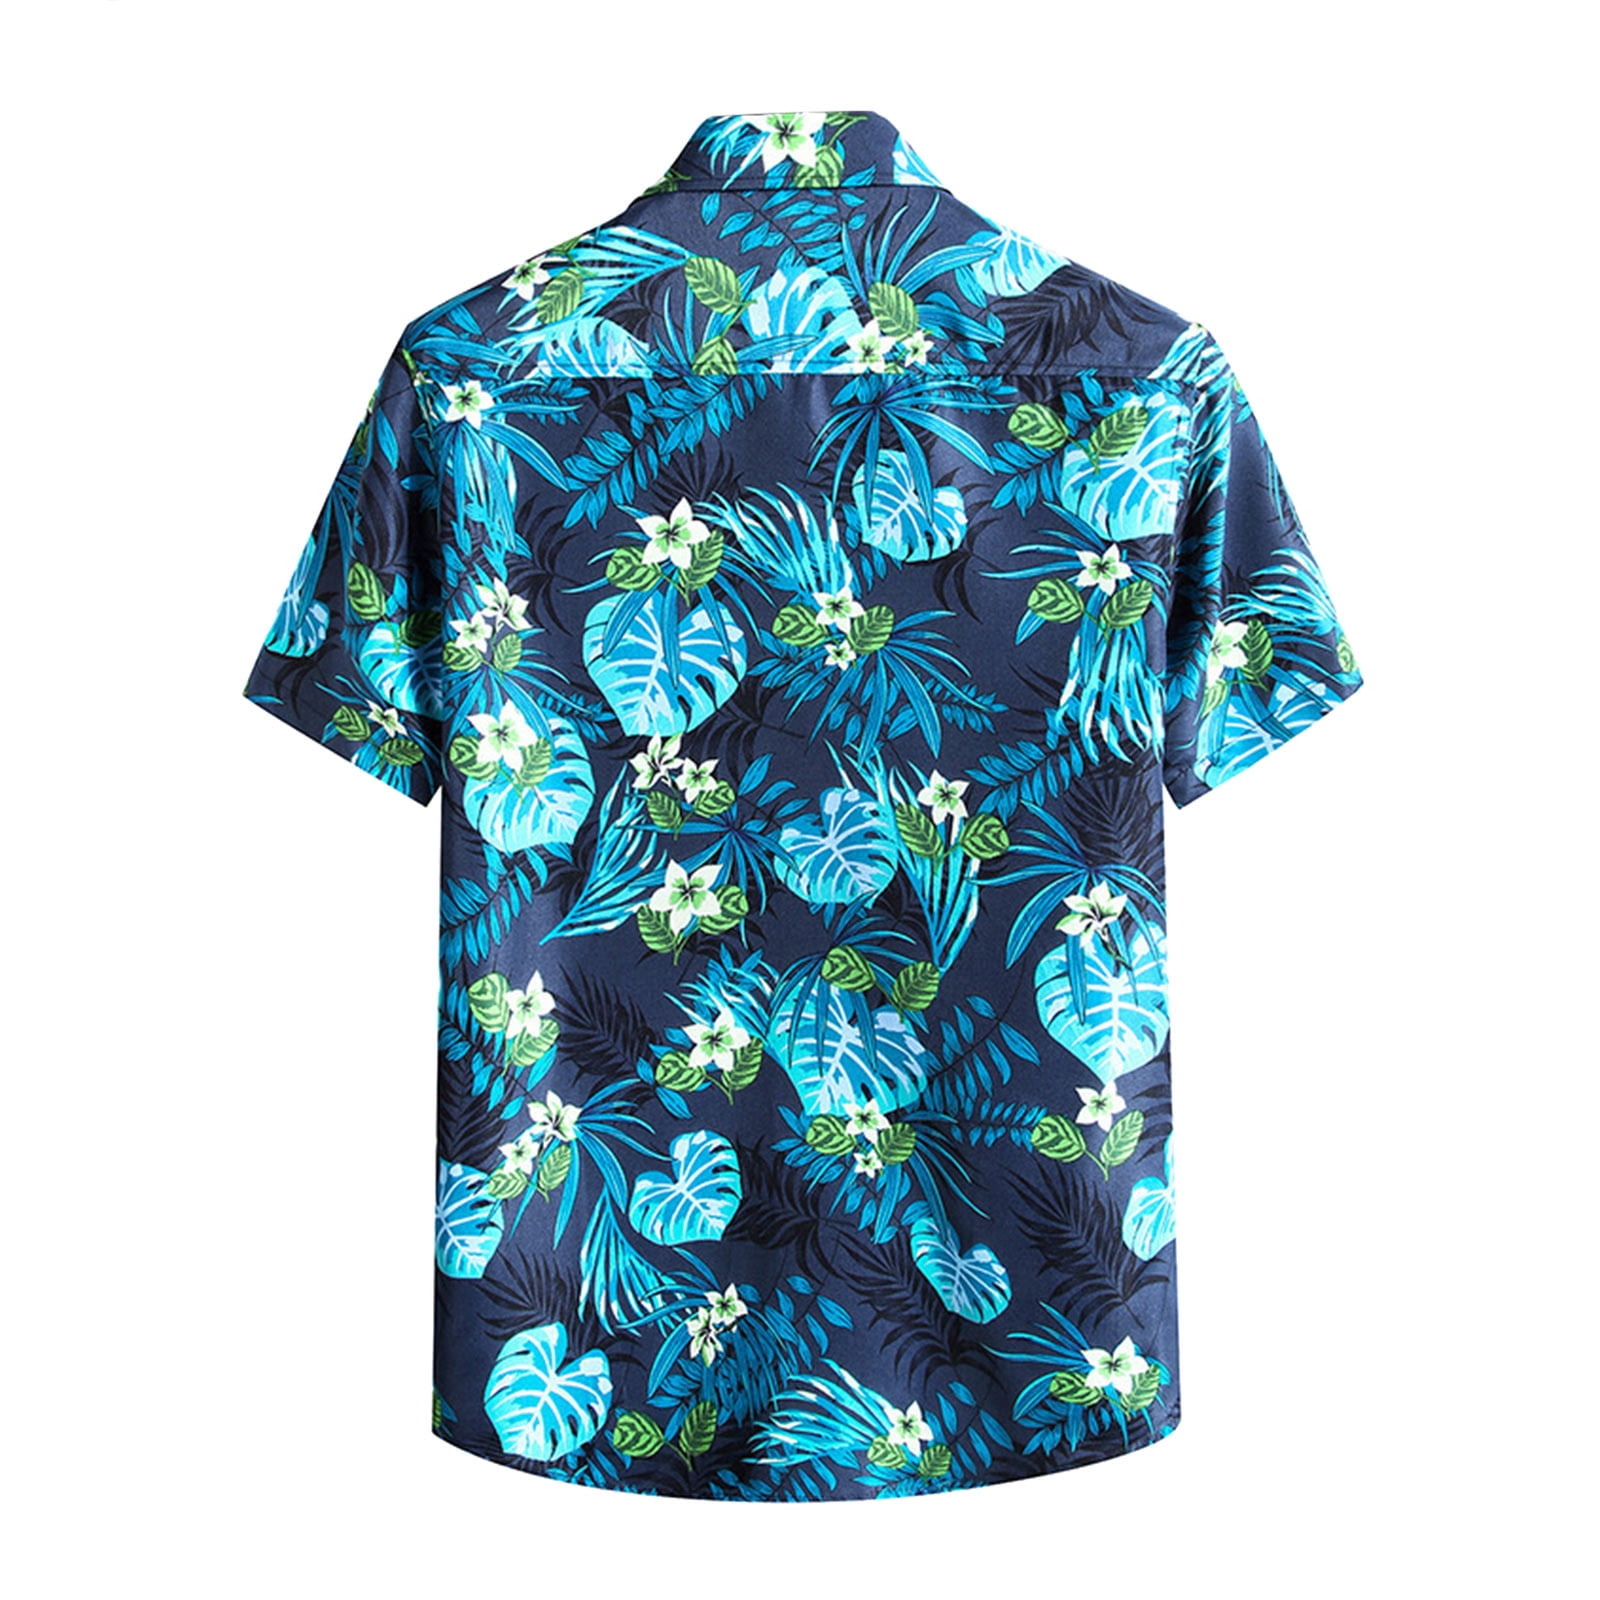 Eashery Hawaiian Shirt Men's Fishing Shirts with Zipper Pockets Lightweight  Cool Short Sleeve Button Down Shirts for Men Casual Hiking Sky Blue  5X-Large 